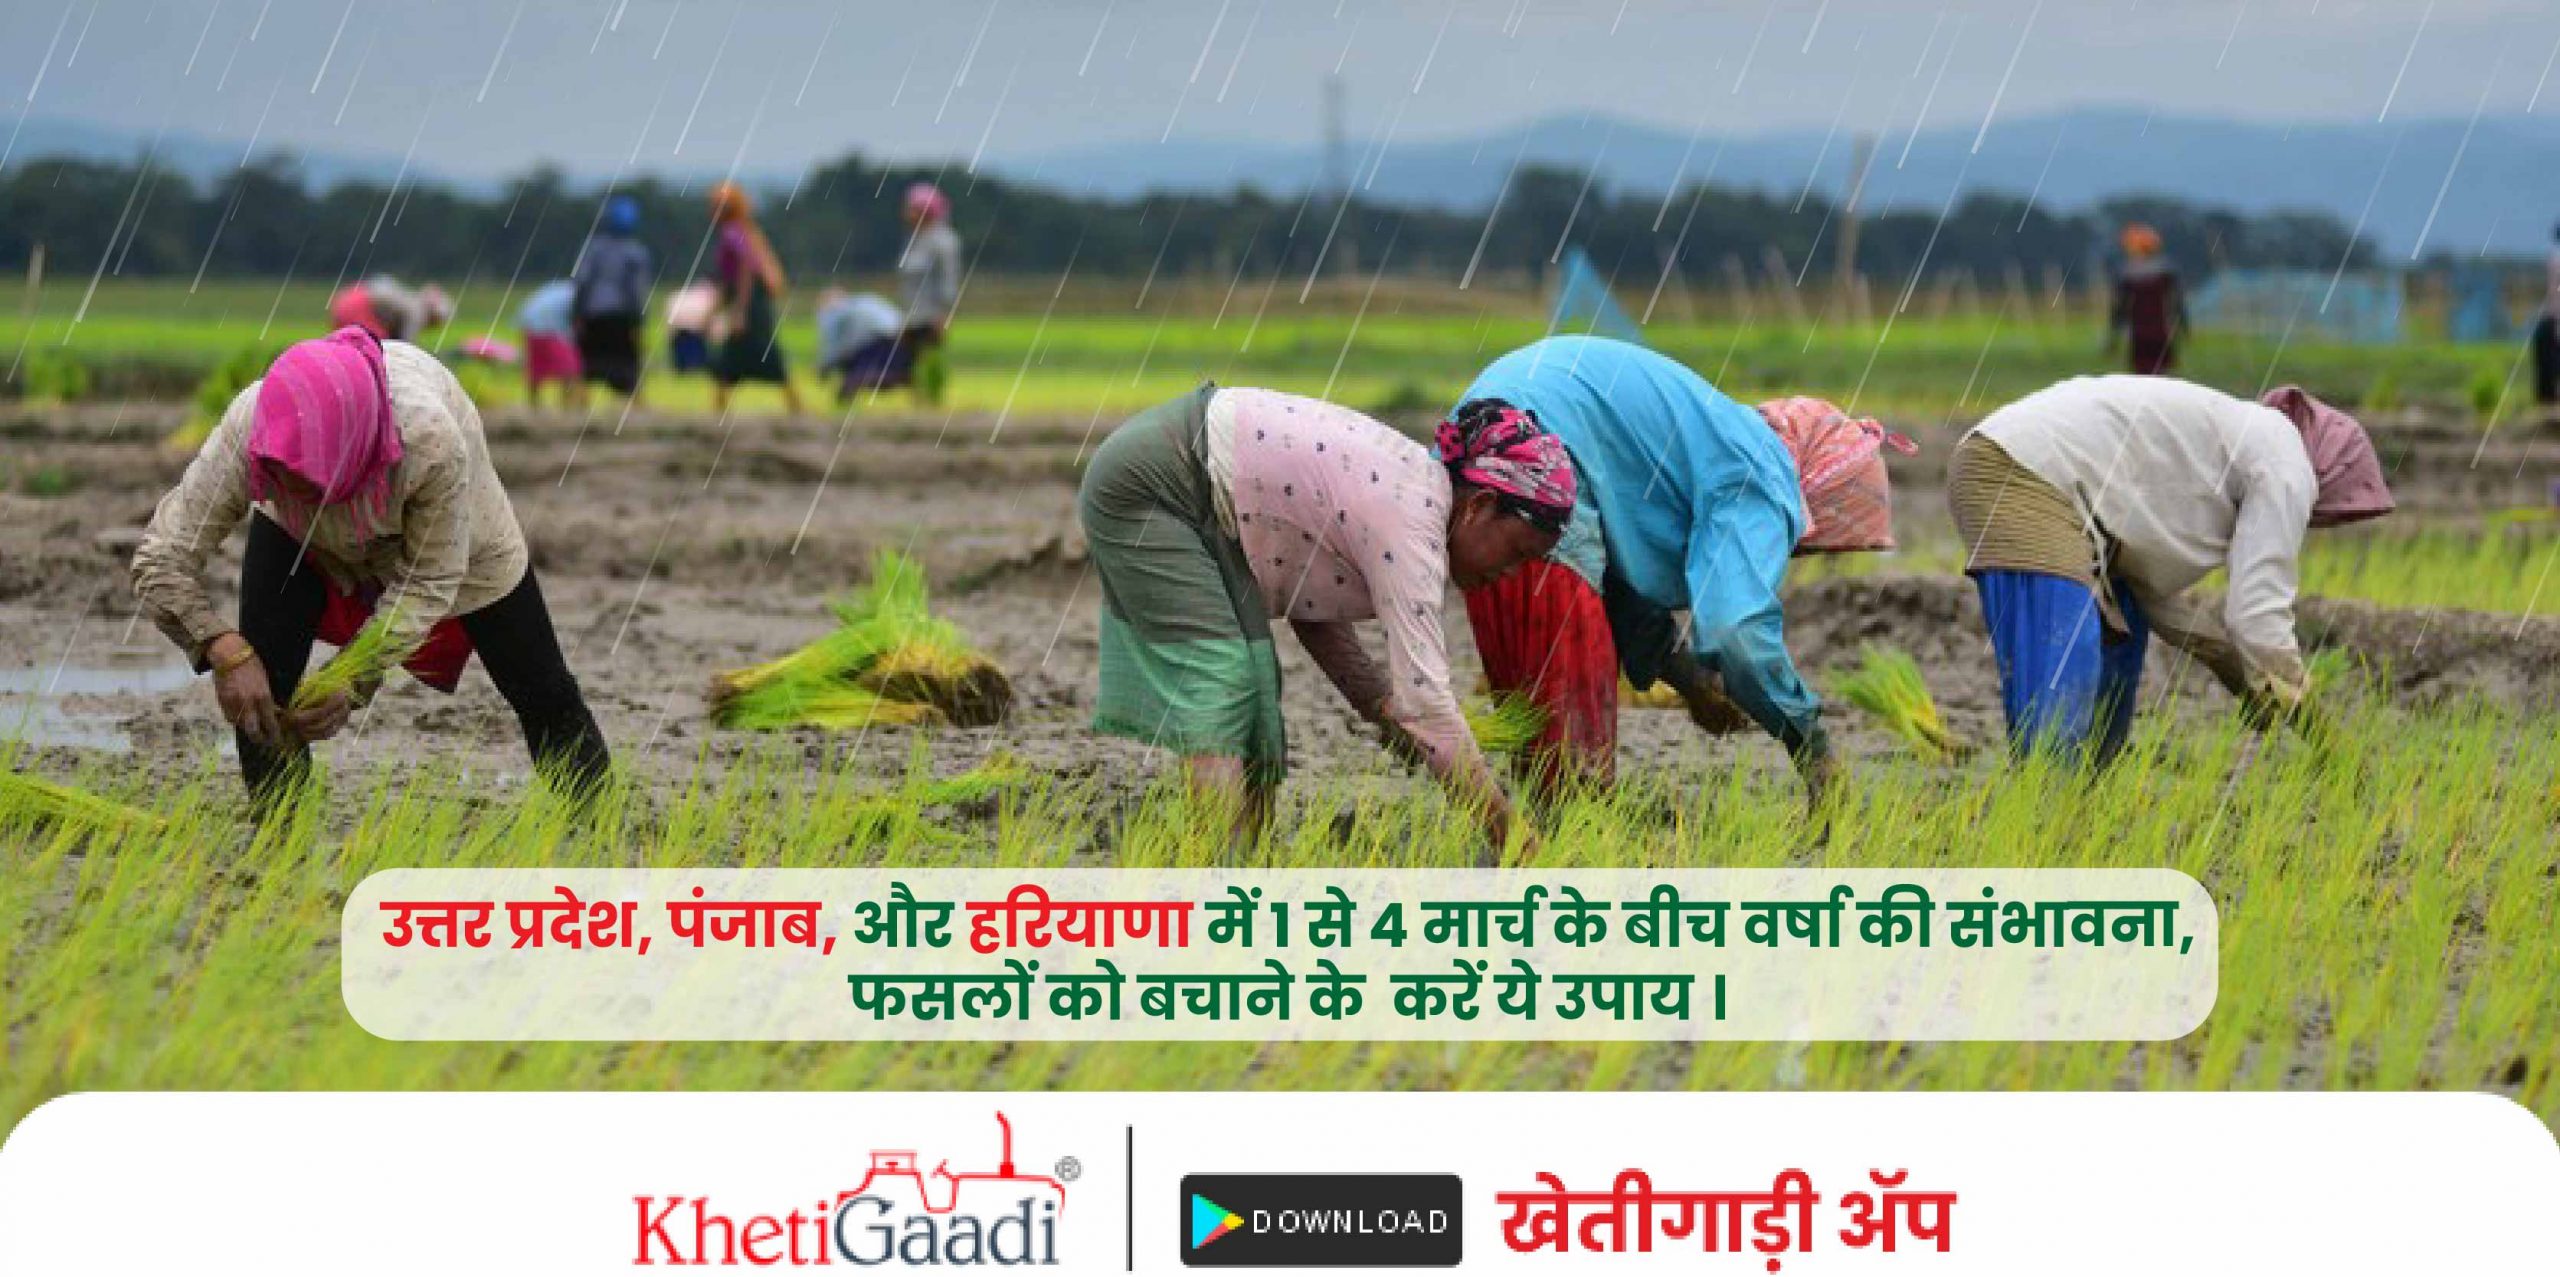 उत्तर प्रदेश, पंजाब, और हरियाणा में 1 से 4 मार्च के बीच वर्षा की संभावना (Barish ki update),फसलों को बचाने के  करें ये उपाय।